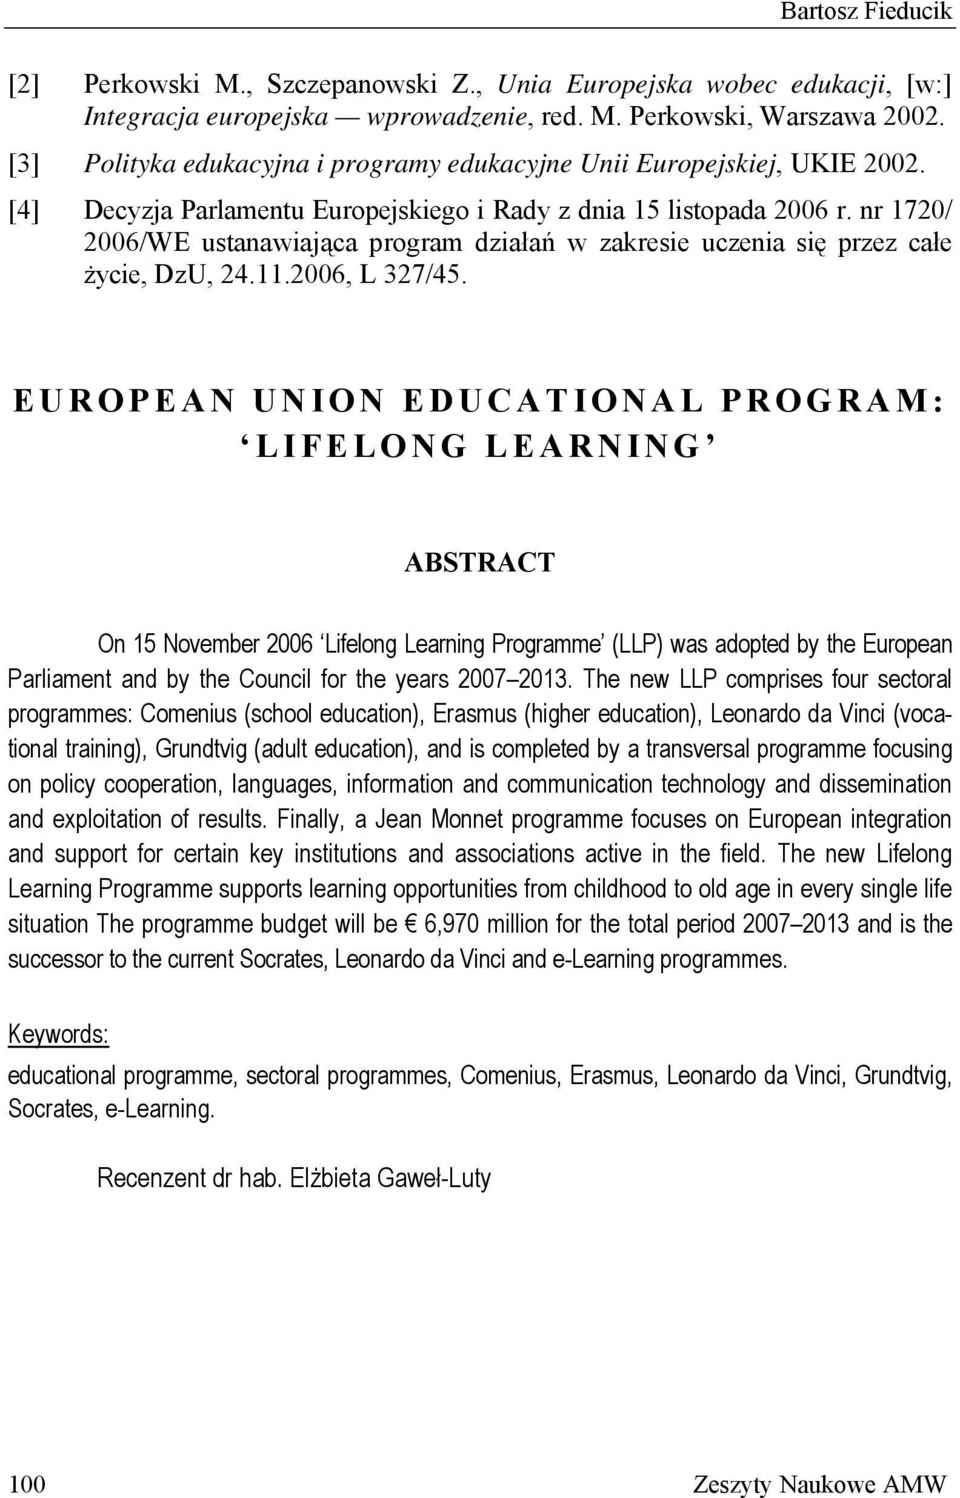 nr 1720/ 2006/WE ustanawiająca program działań w zakresie uczenia się przez całe życie, DzU, 24.11.2006, L 327/45.